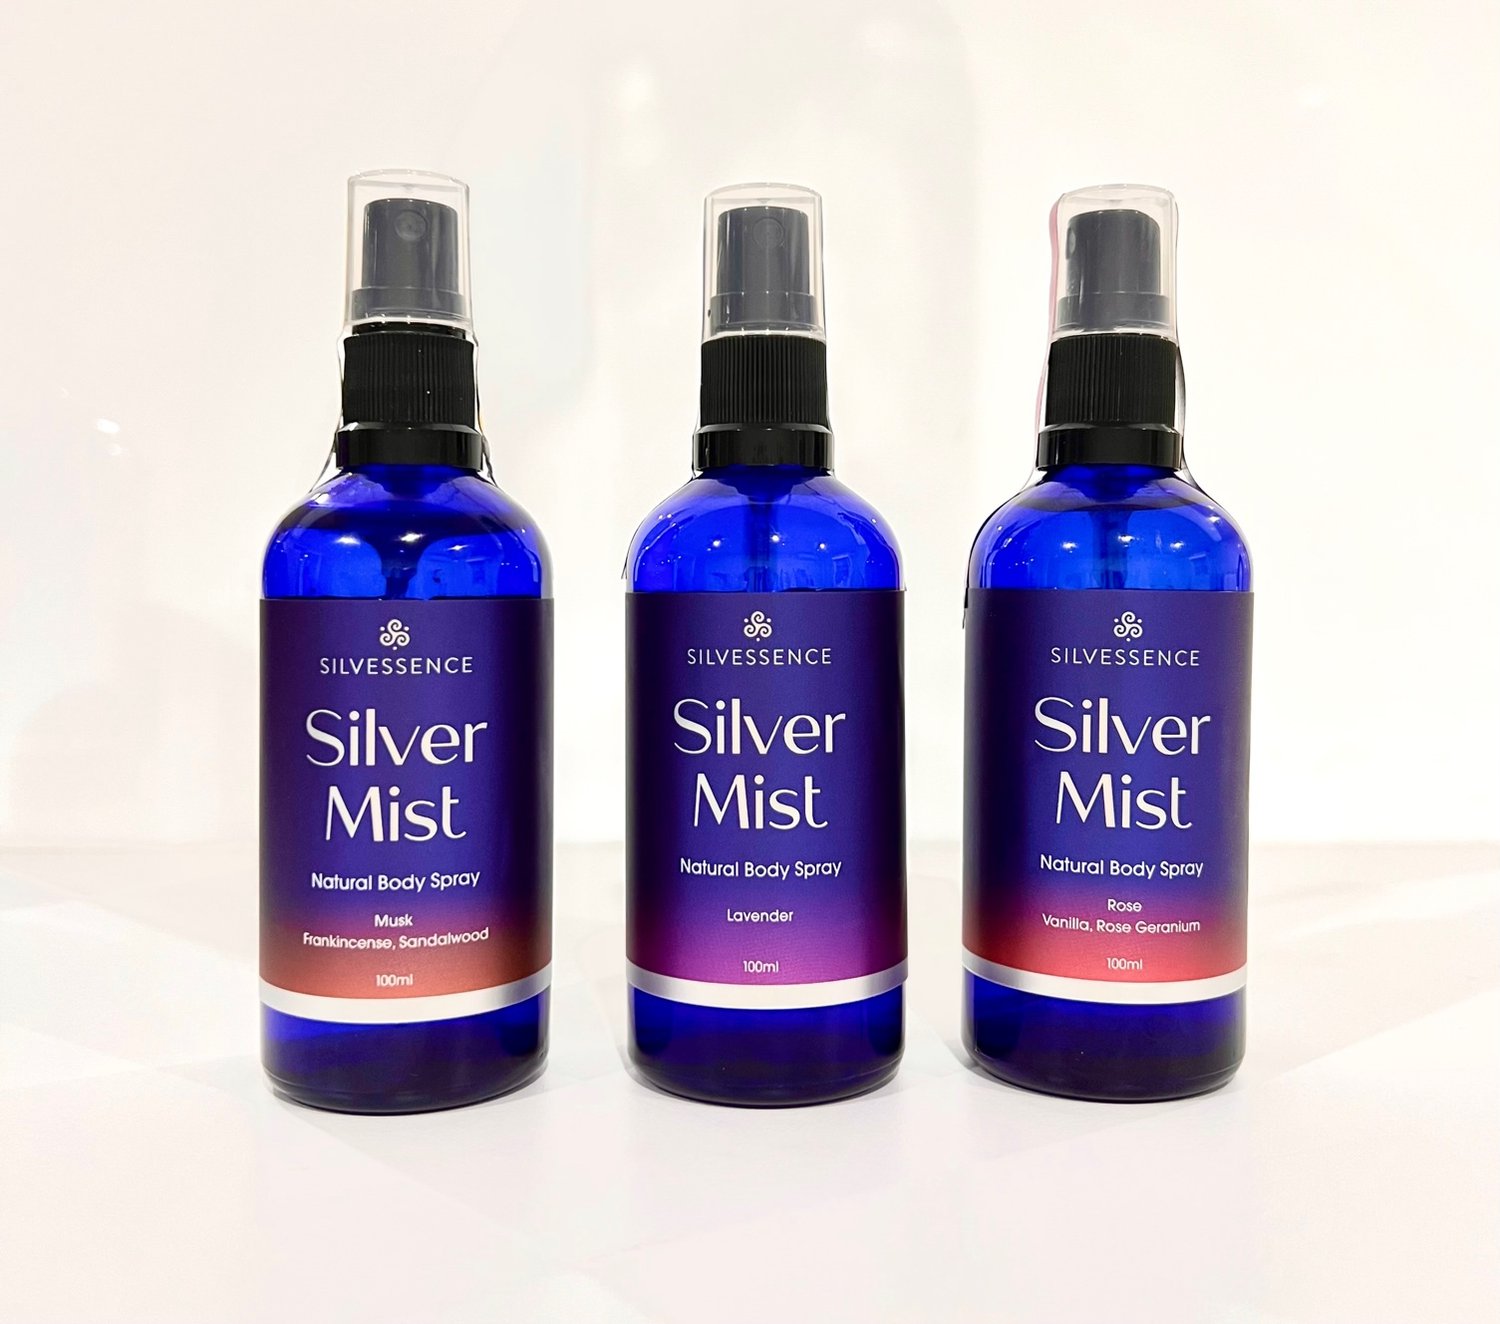 Silver Mist — Waiheke Herbs